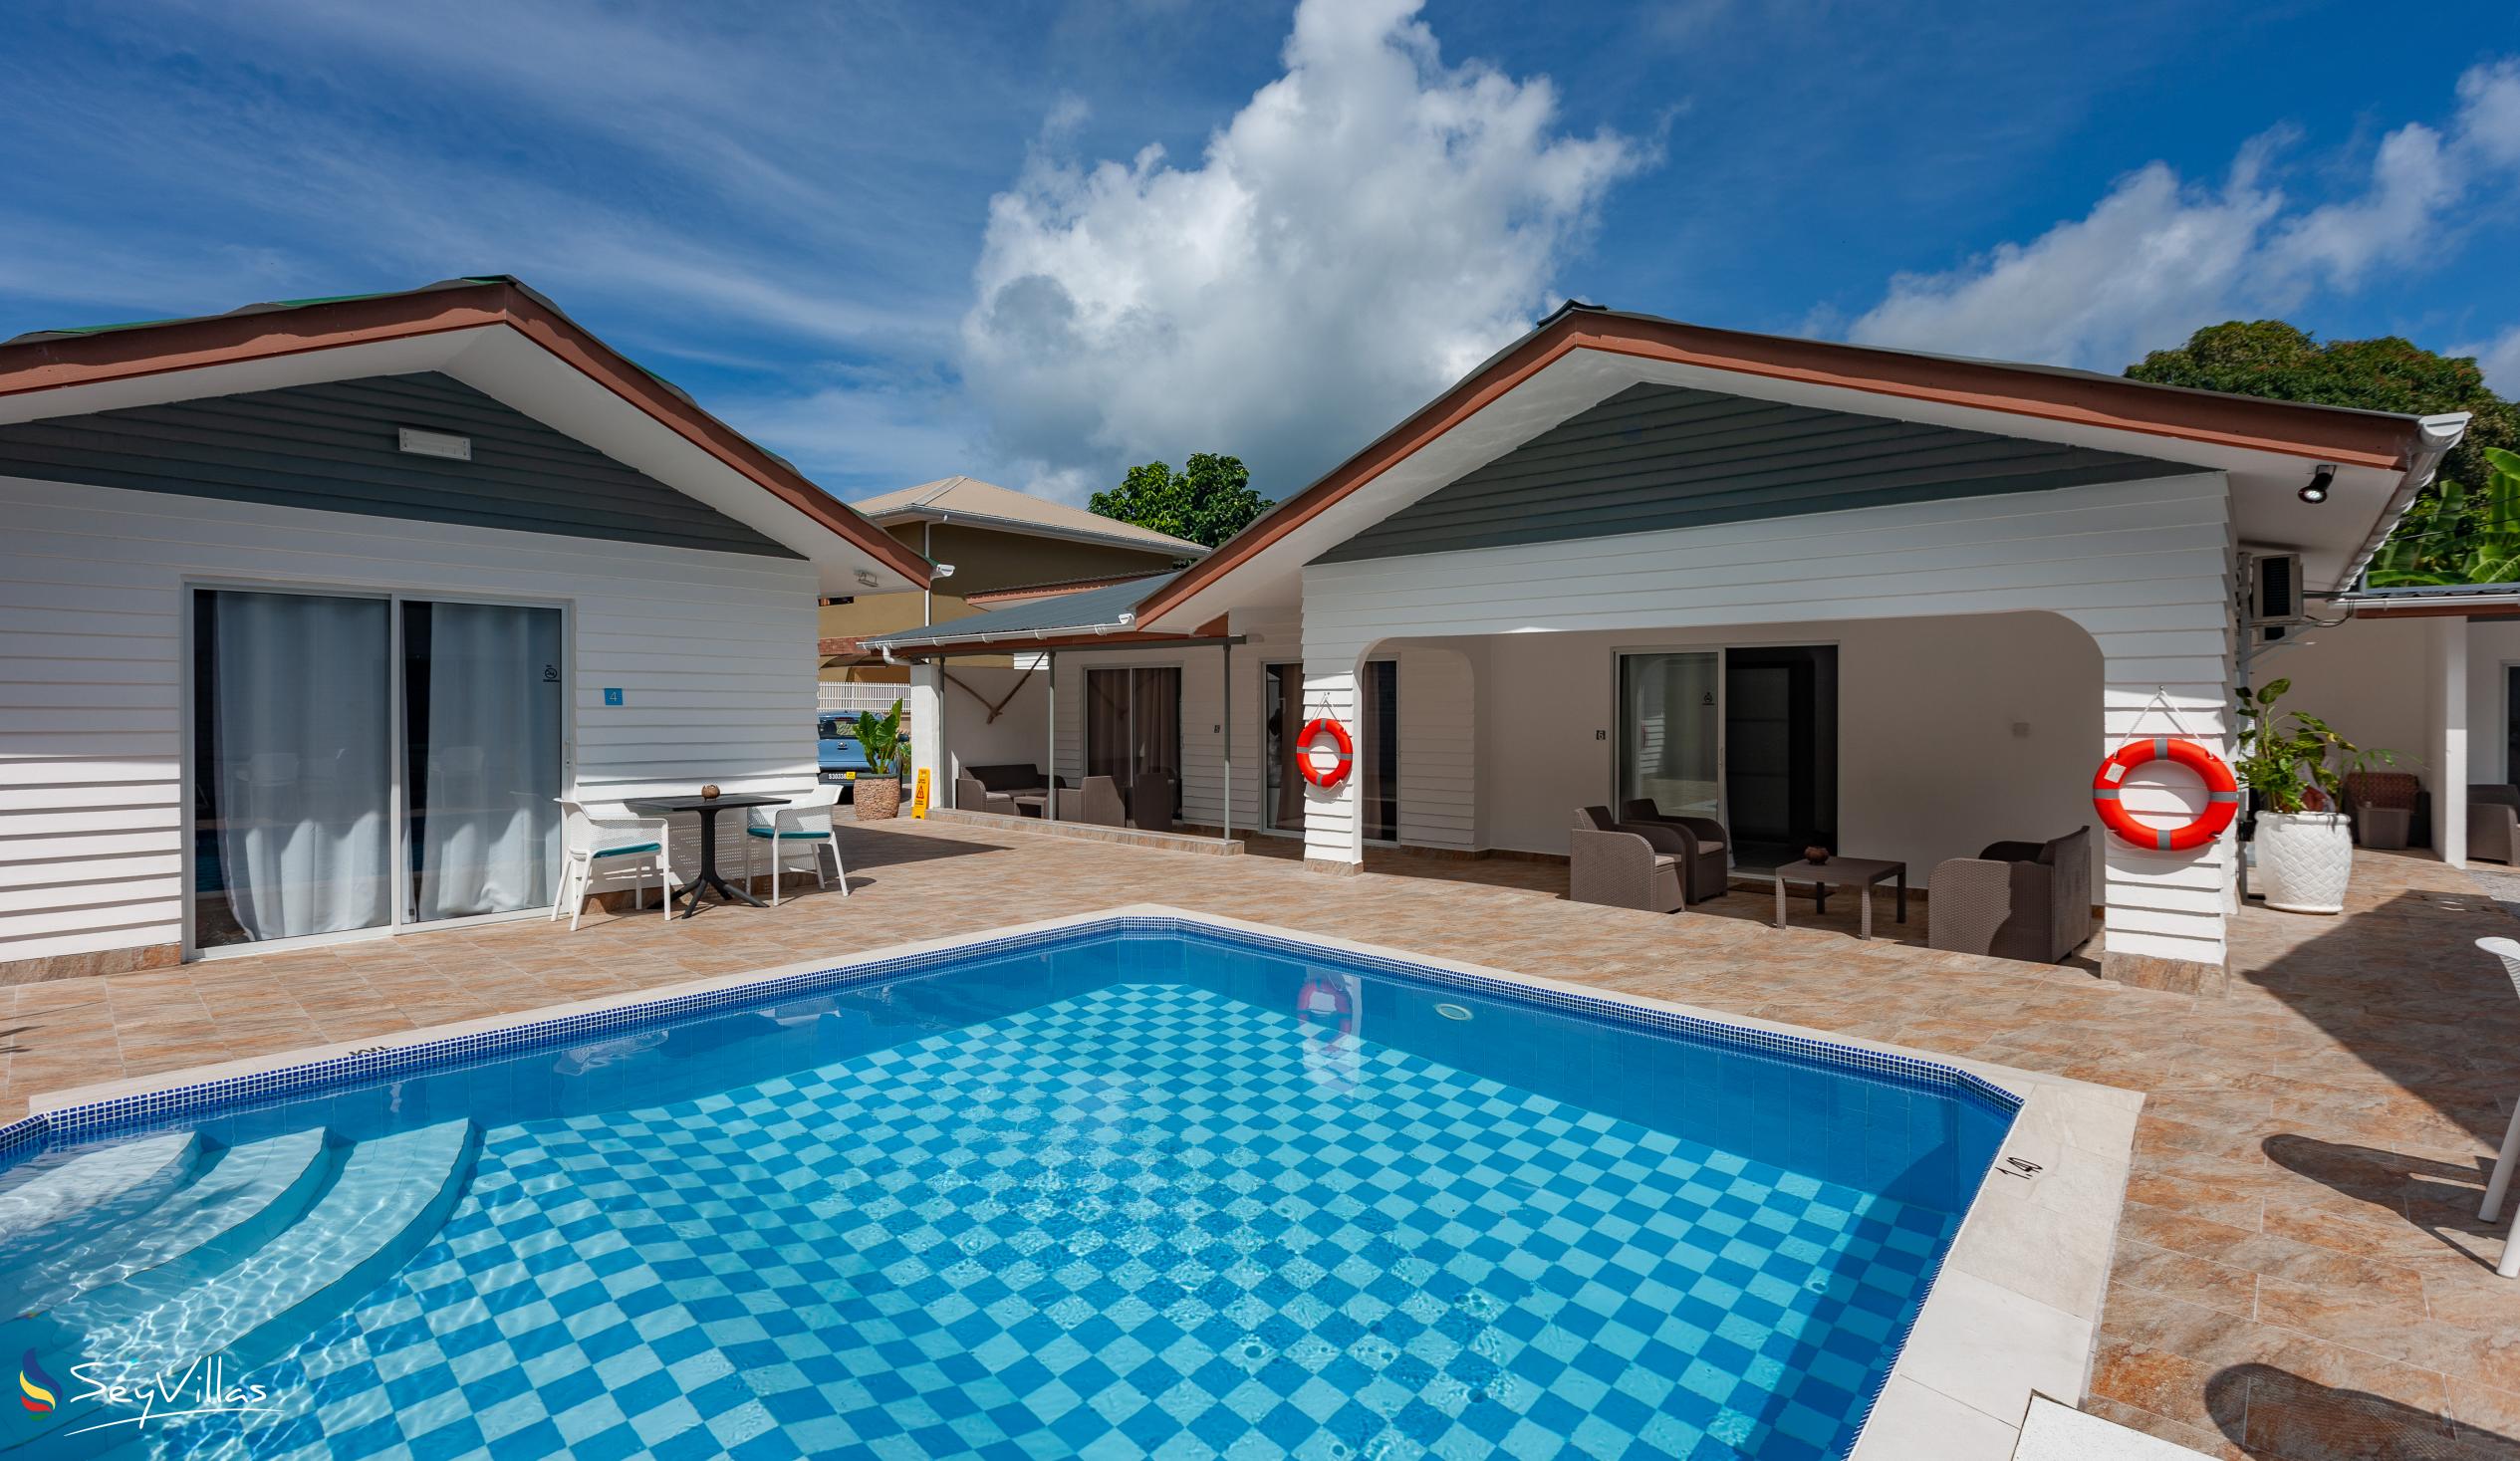 Photo 8: Hotel Plein Soleil - Outdoor area - Praslin (Seychelles)